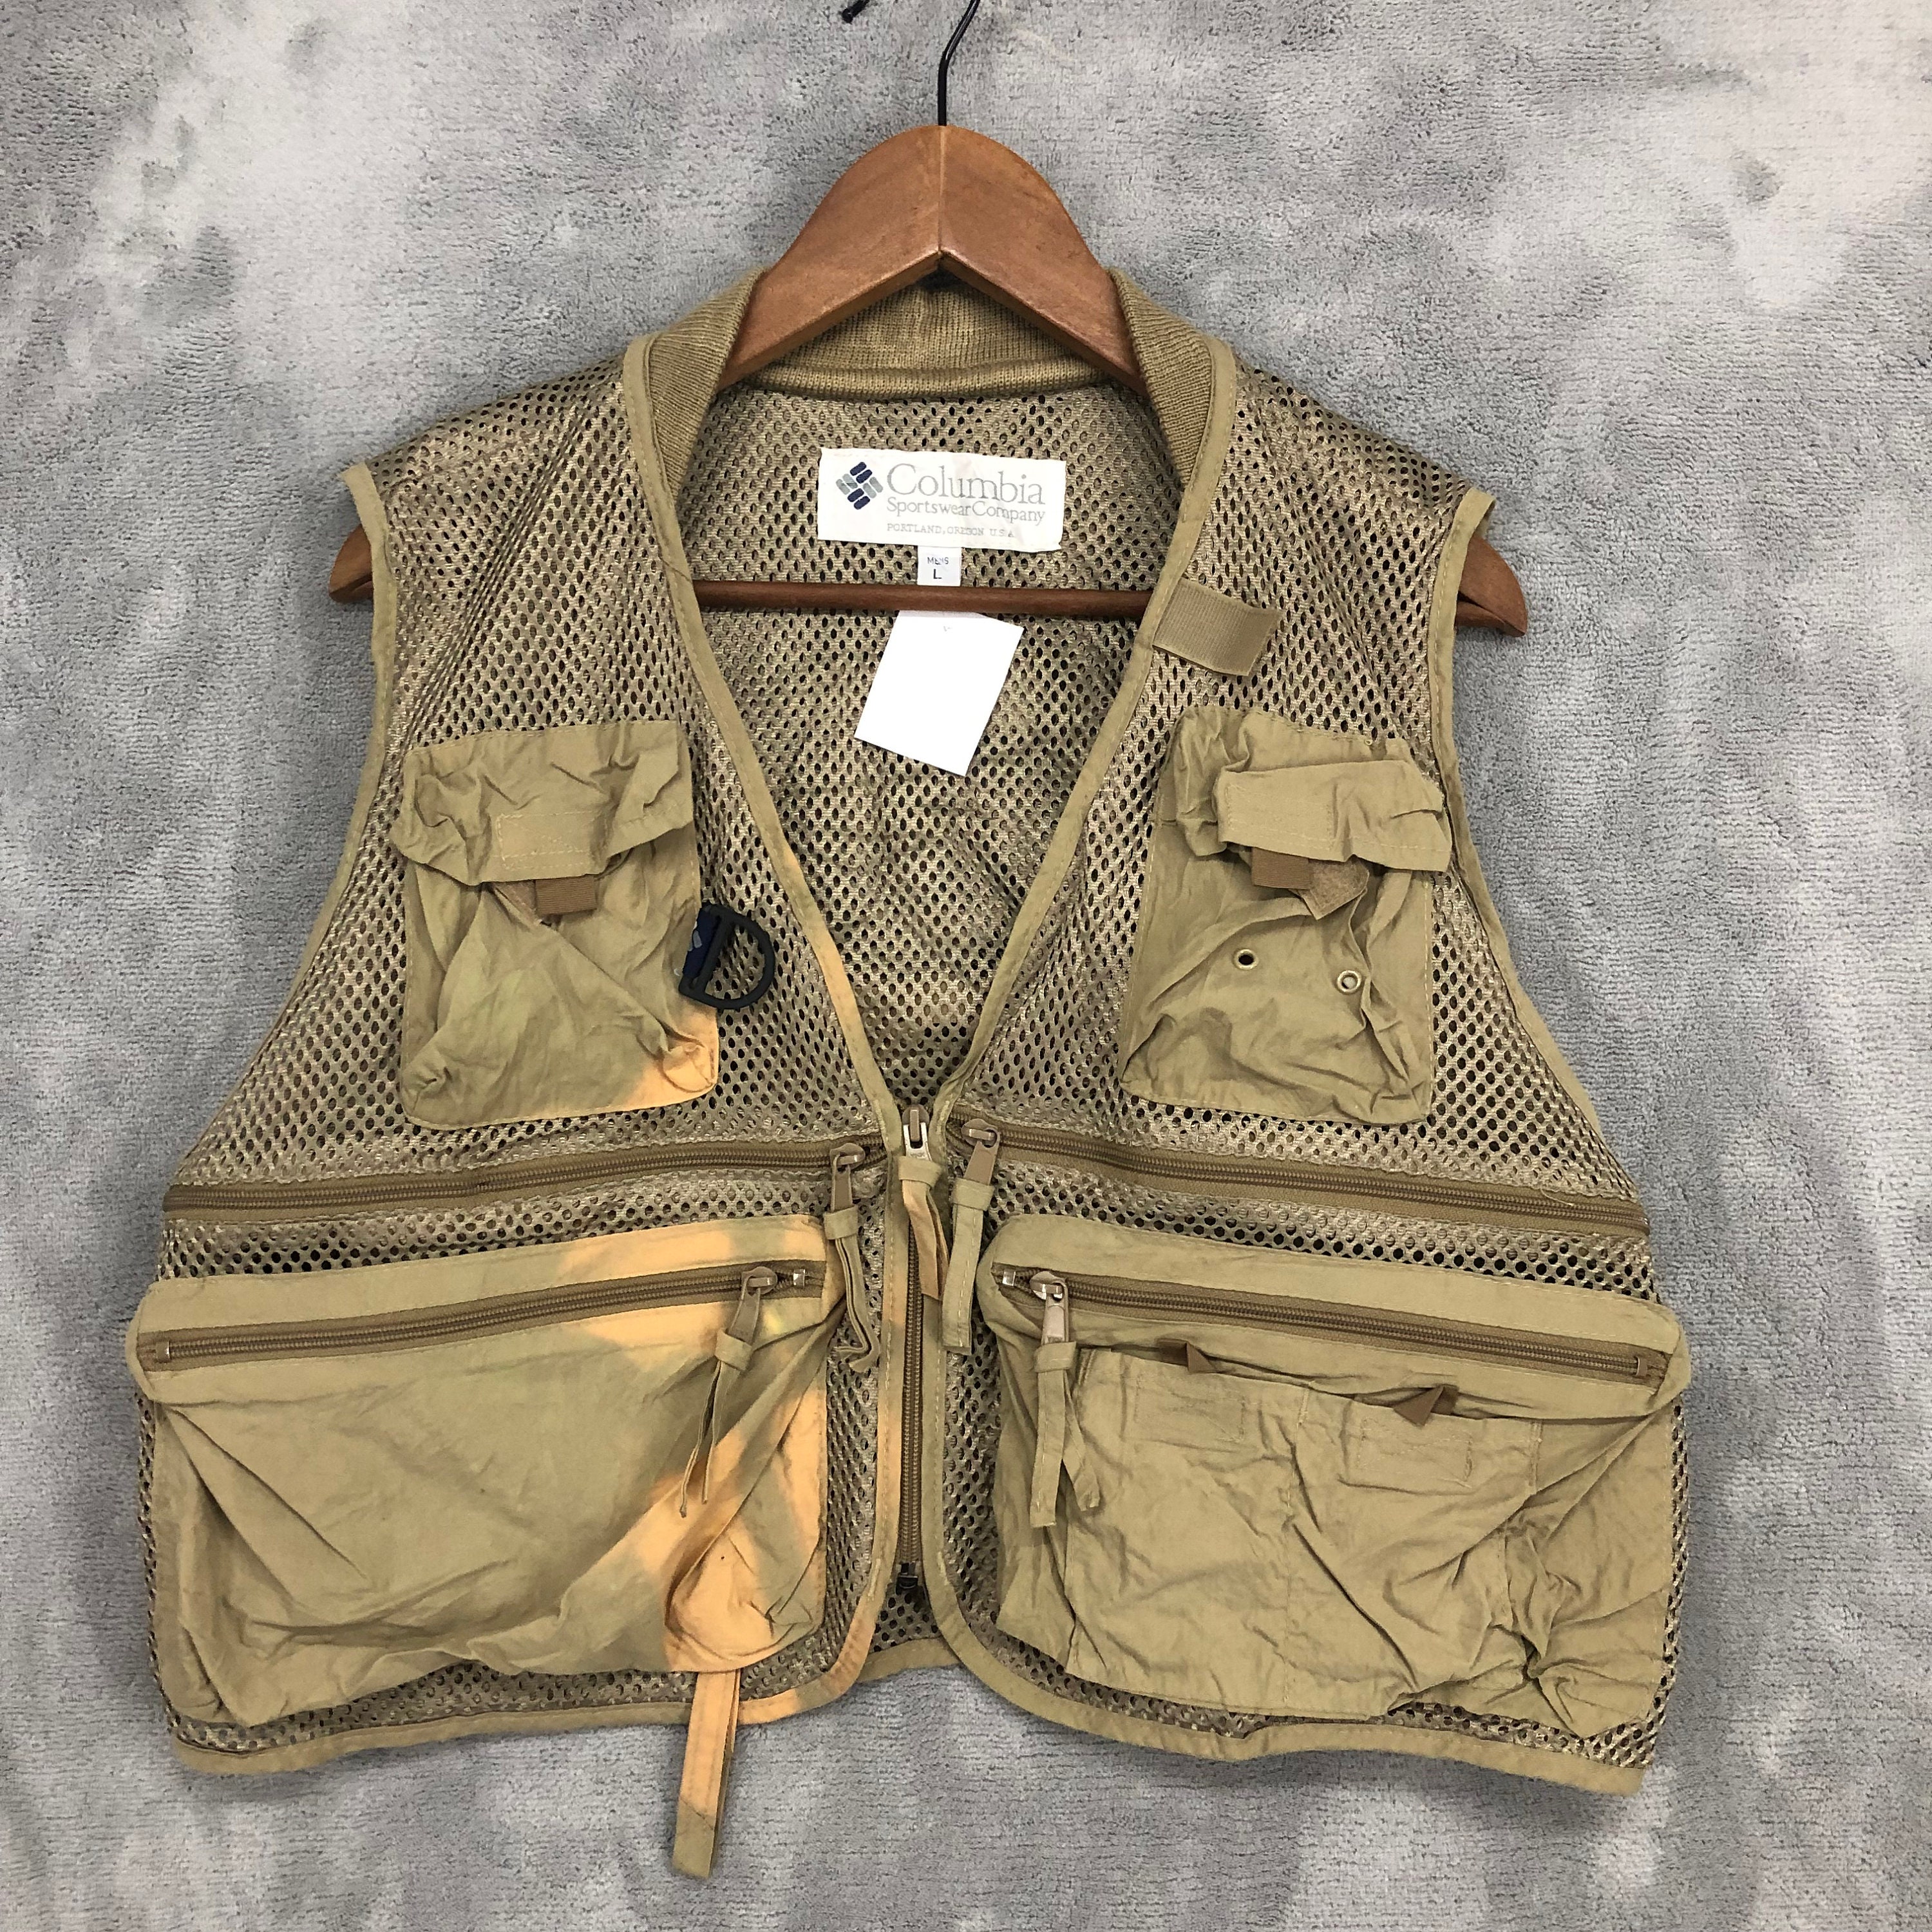 Vintage Columbia Fishing Vest Jacket Net Vest Fishing Gear Multipocket Vest  Men size L